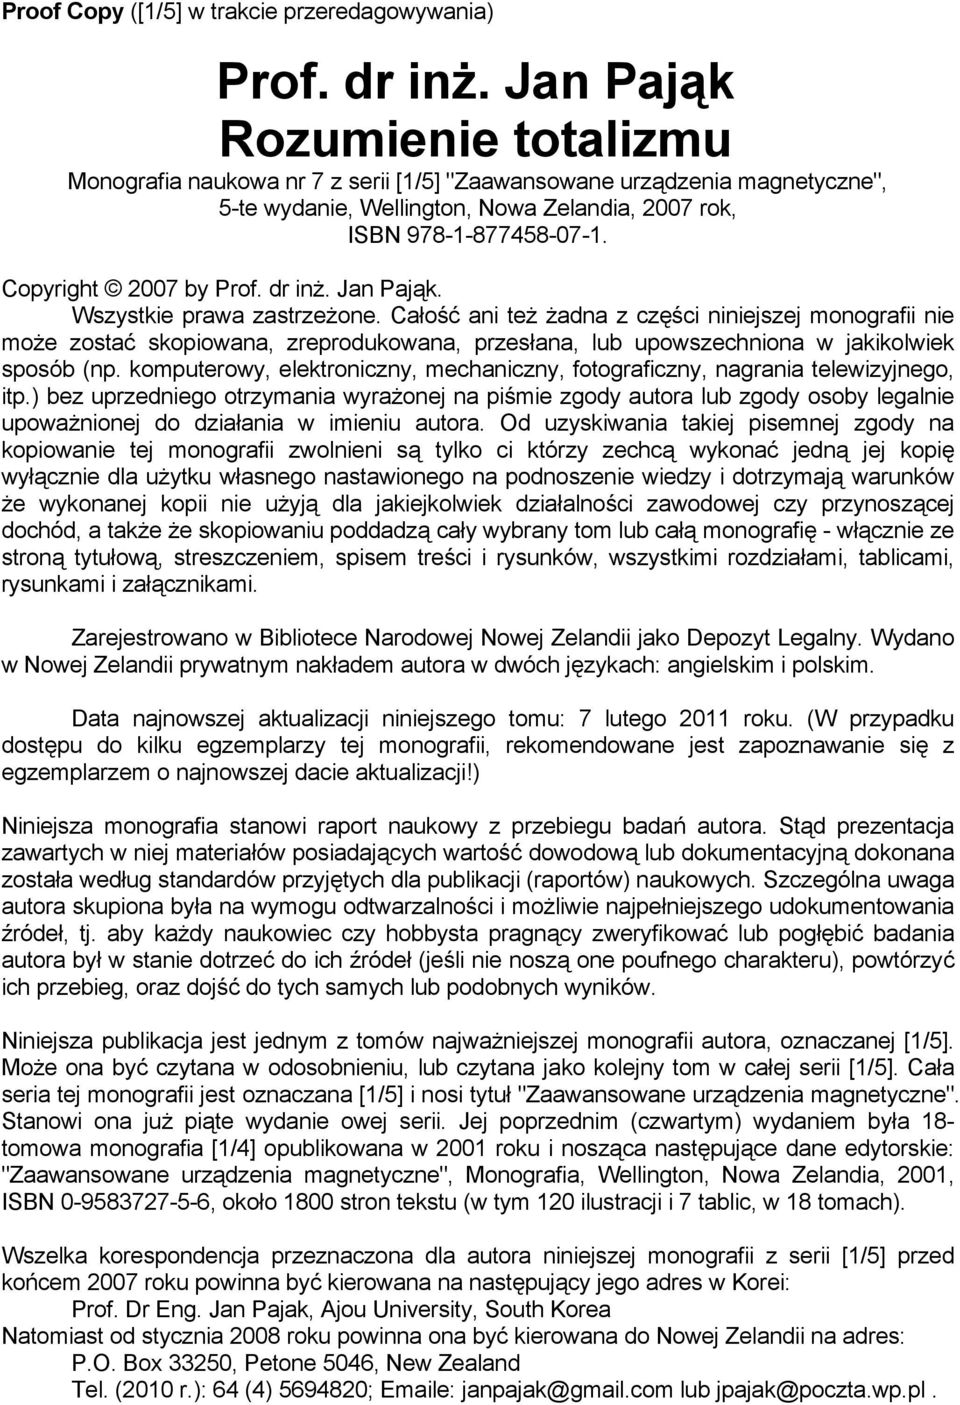 Copyright 2007 by Prof. dr inż. Jan Pająk. Wszystkie prawa zastrzeżone.